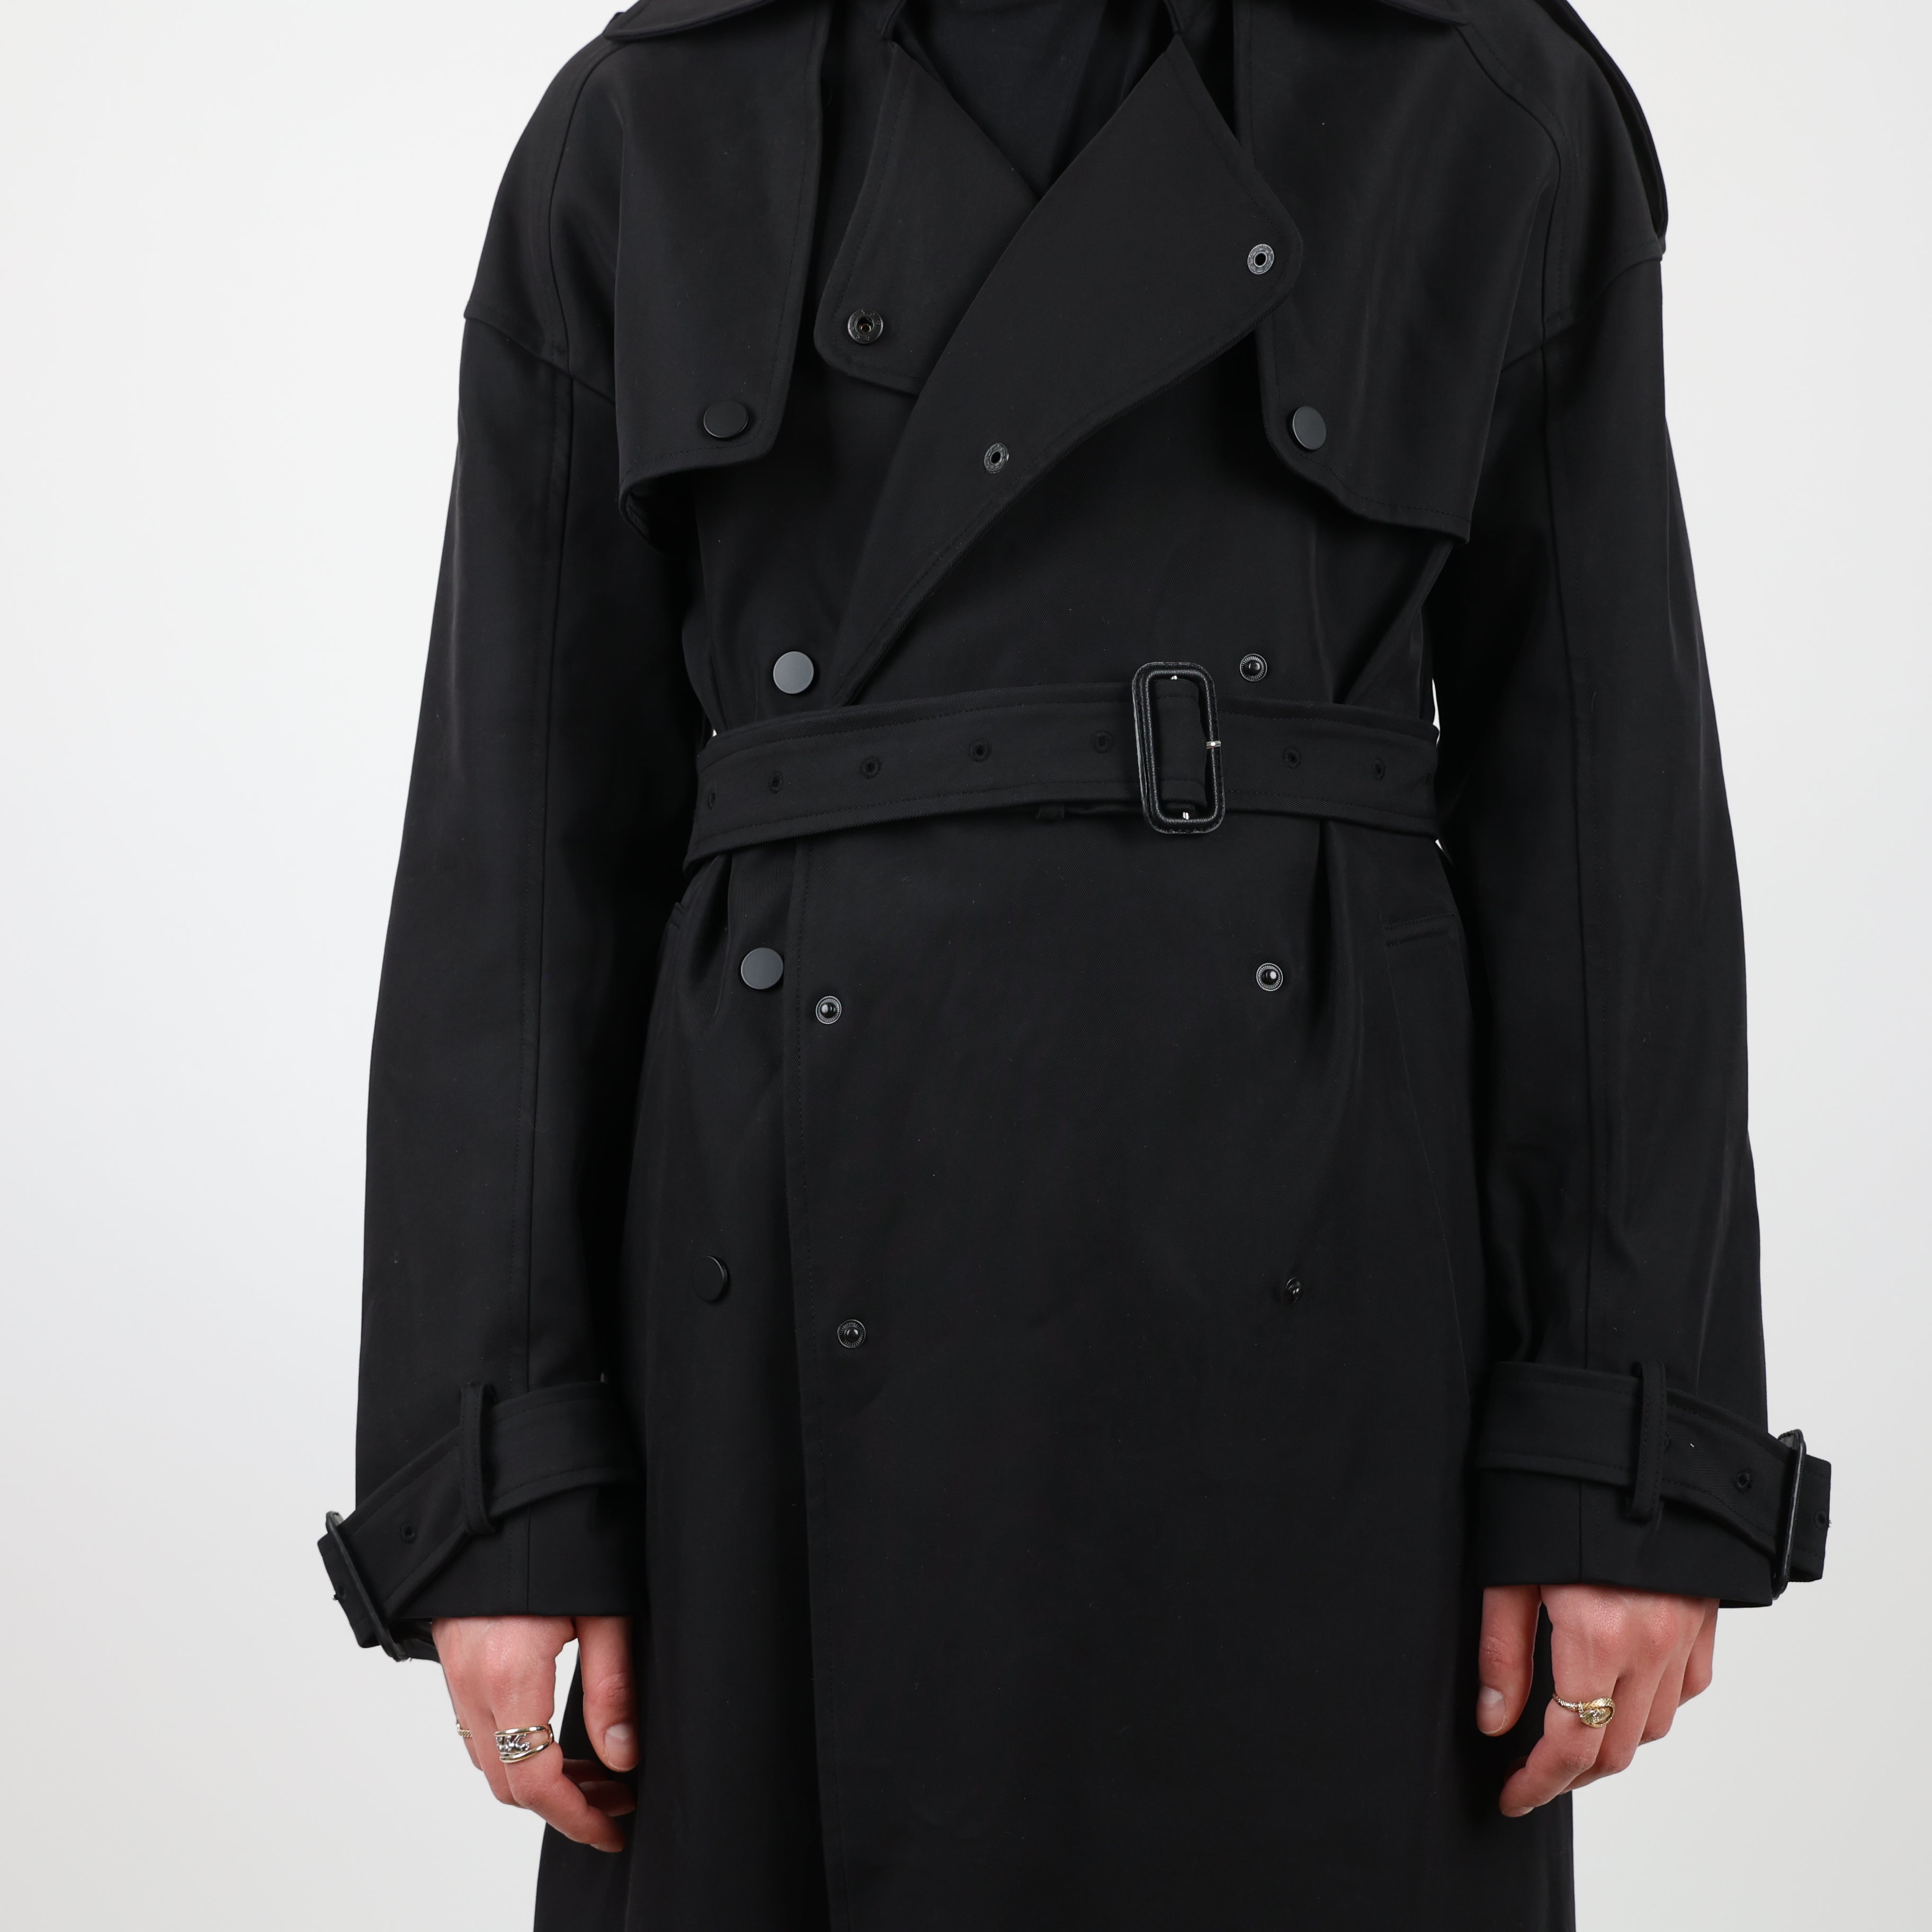 Coat, UK Size 12